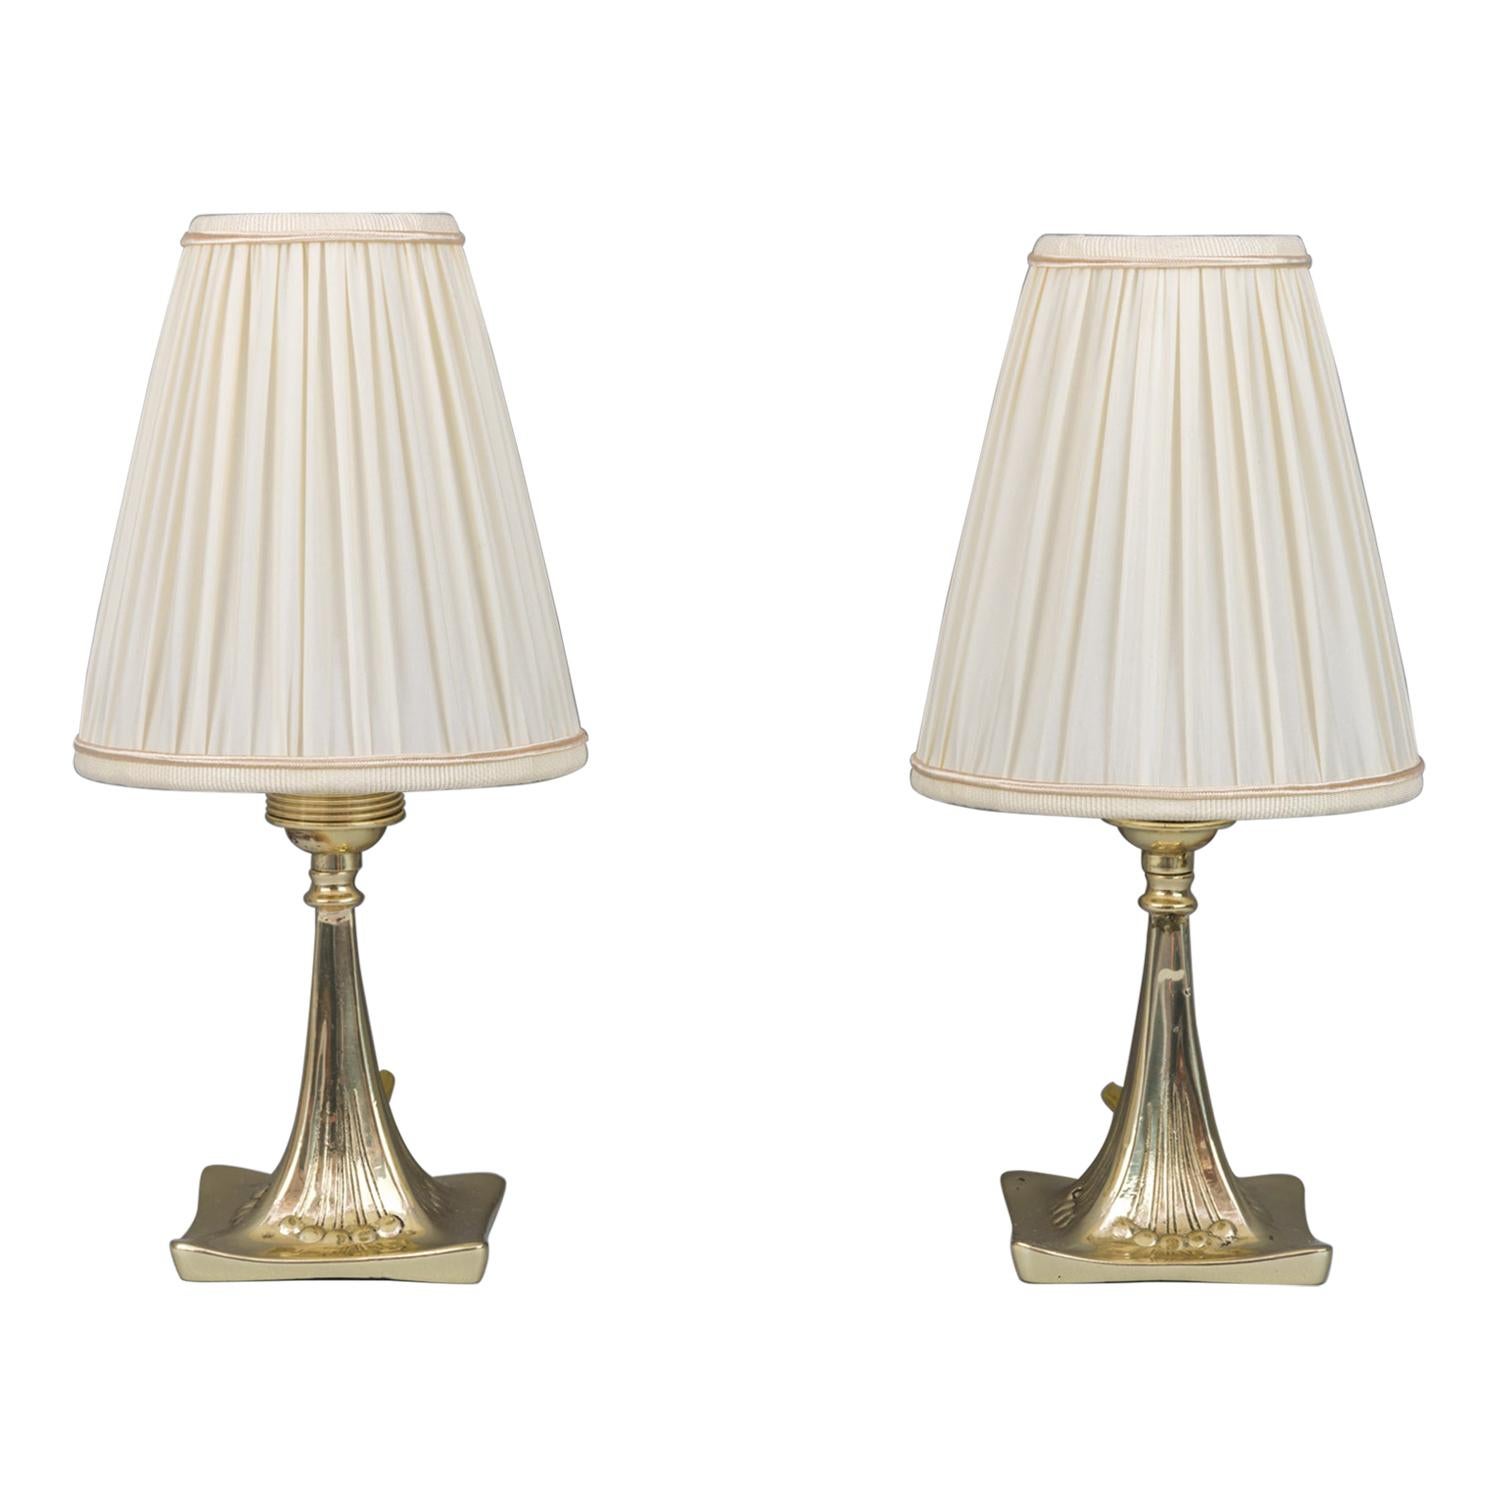 Two Jugendstil Table Lamps, circa 1908